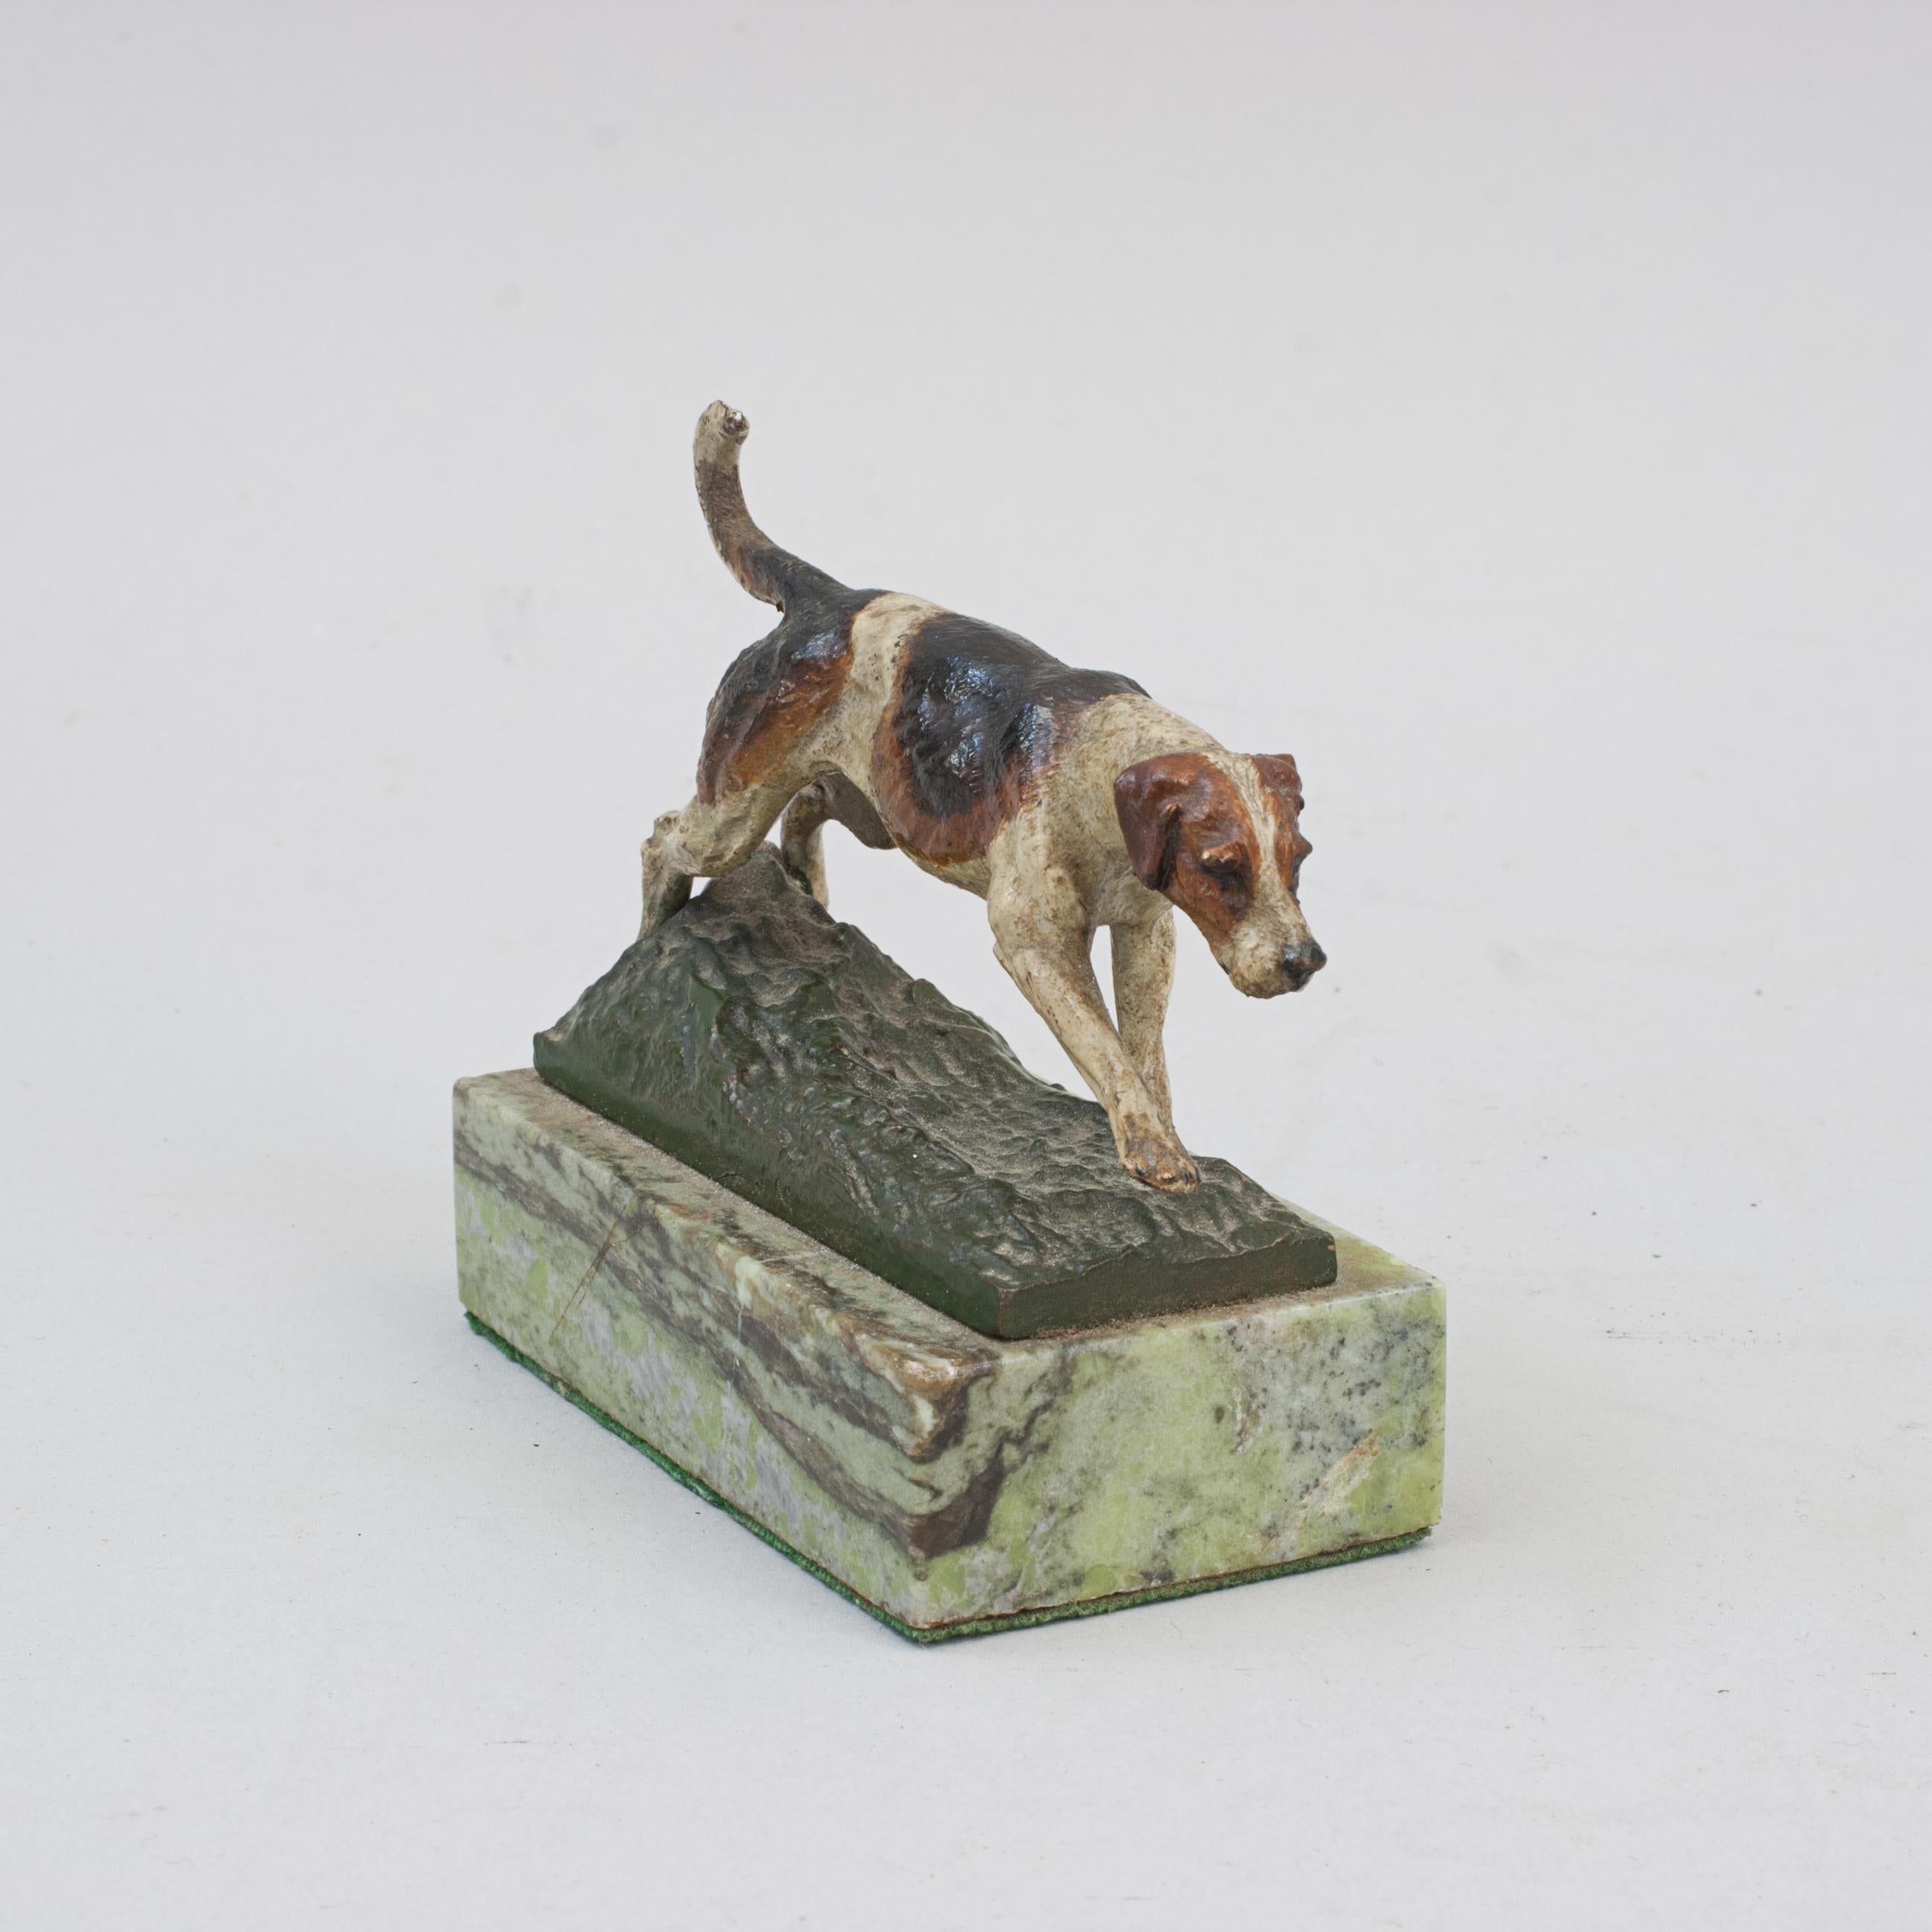 Antiker Wiener Bronze-Fuchshund.
Eine hochwertige österreichisch/wienerische kaltbemalte Bronzestudie eines Fuchshundes. Der Jagdhund ist gut gegossen und bemalt, hat aber leichte Farbverluste an der Rute. Montiert auf einem rechteckigen Sockel aus